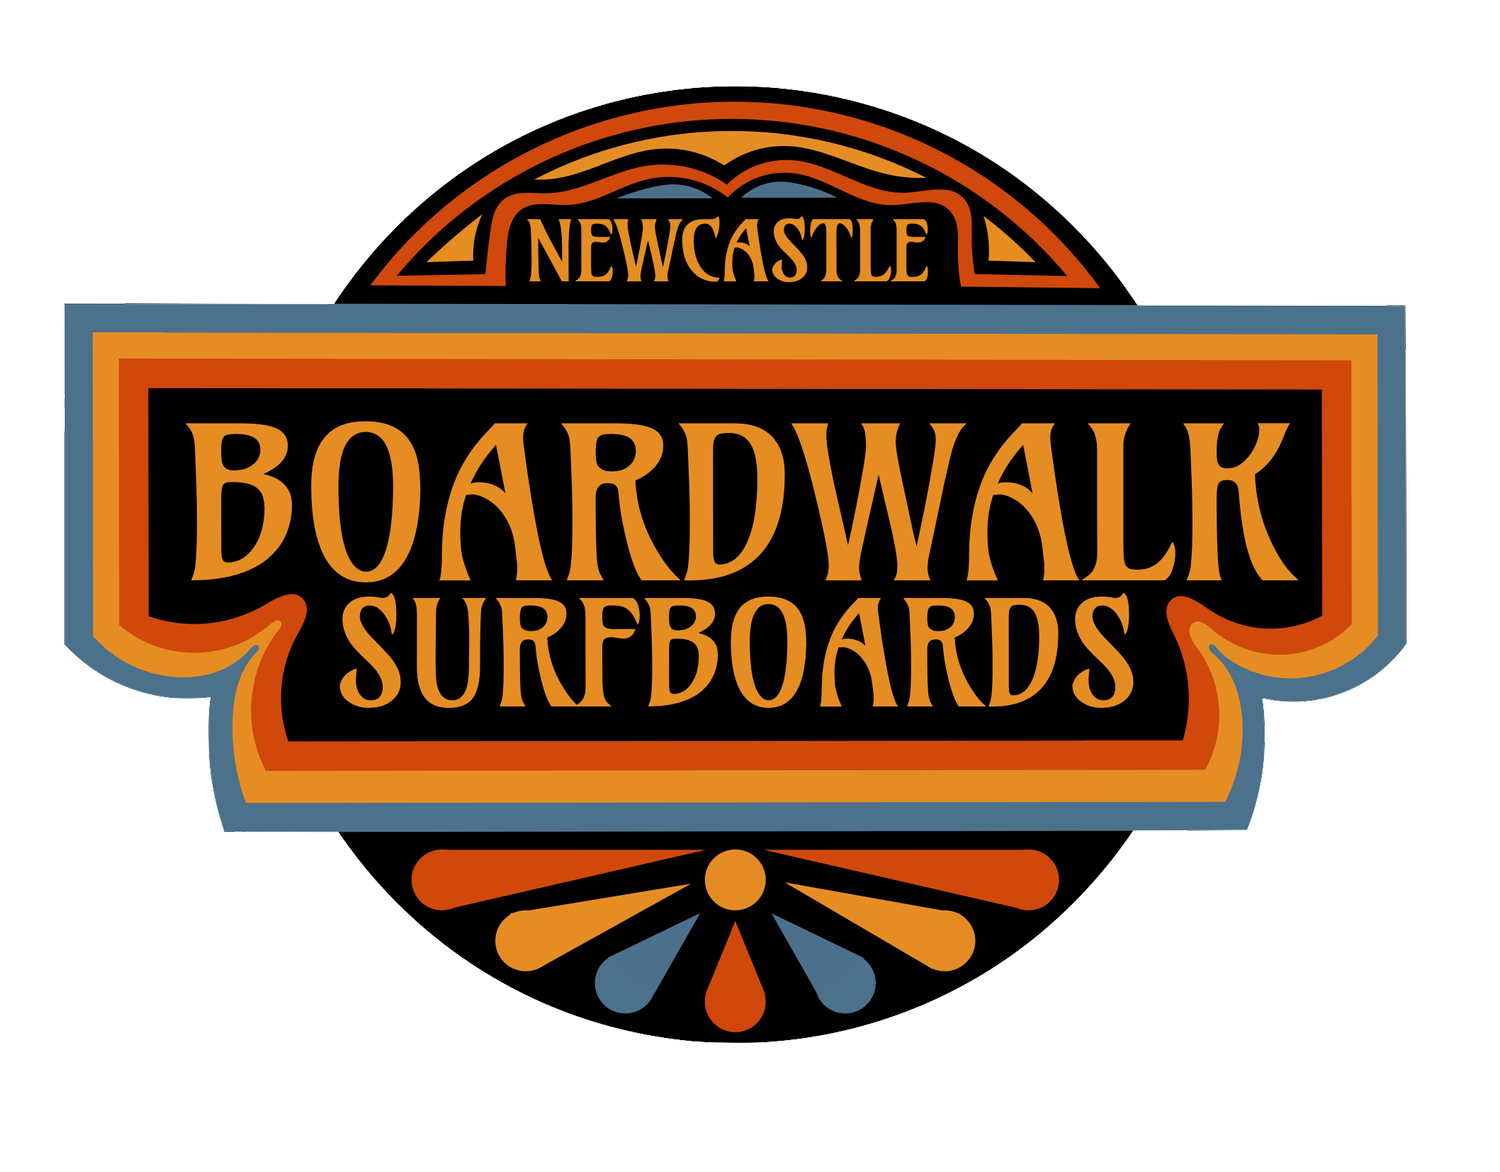 Boardwalk Surfboards Newcastle